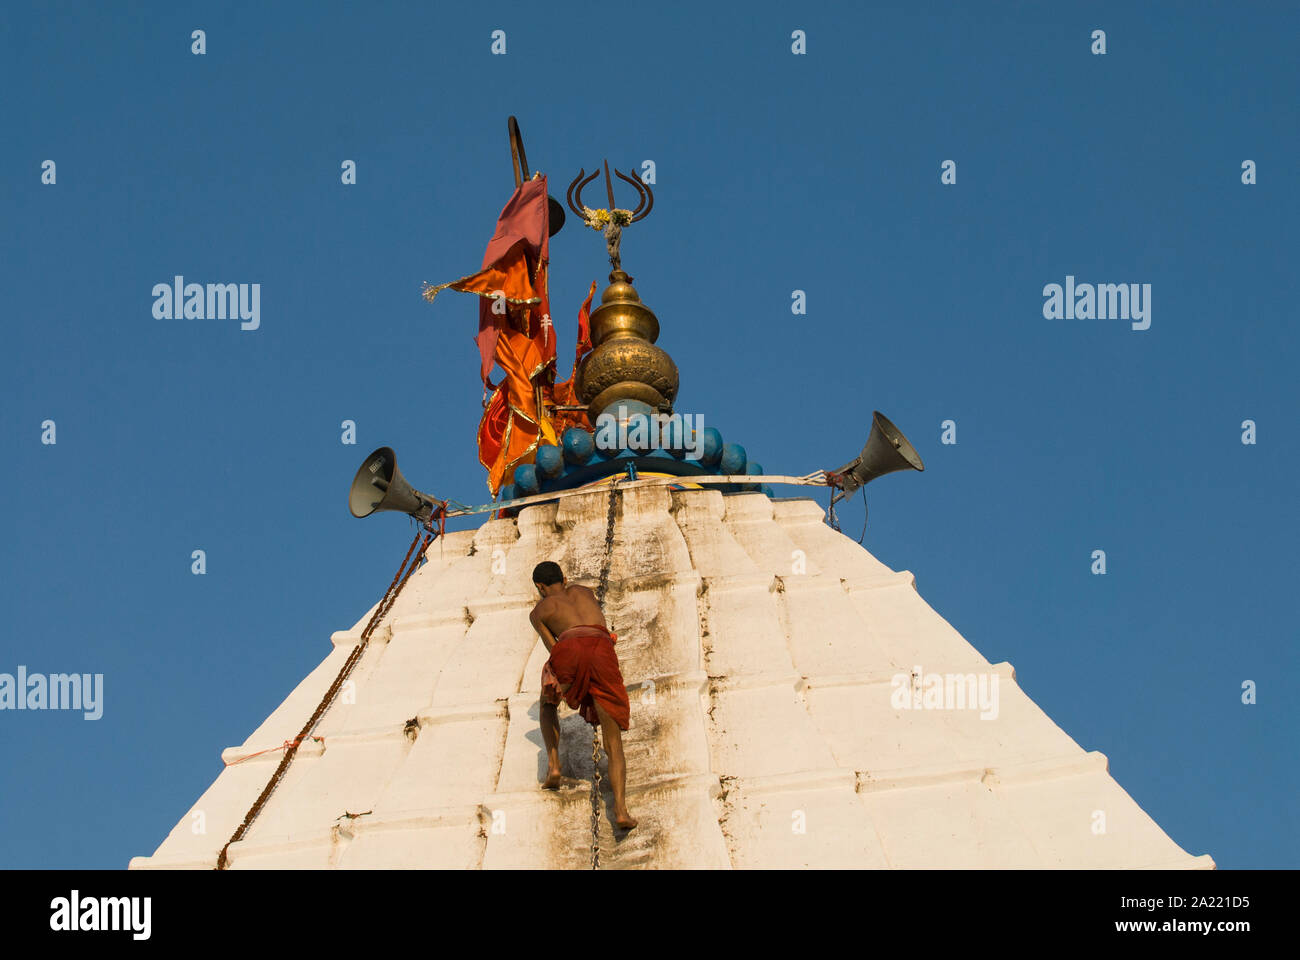 Indien Jharkhand Deogarh, hinduistische Pilger an Shiva Tempel während der jährlichen Festival, es ist einer der heiligen Orte mit einem jyothi Lingam, einen phallus Symbol des hinduistischen Gottes Shiva/INDIEN Jharkhand Deogarh, Hindus besuchen das Tempelfest bin Shiva Tempel ein jyothi Lingam befindet sich nicht Stockfoto